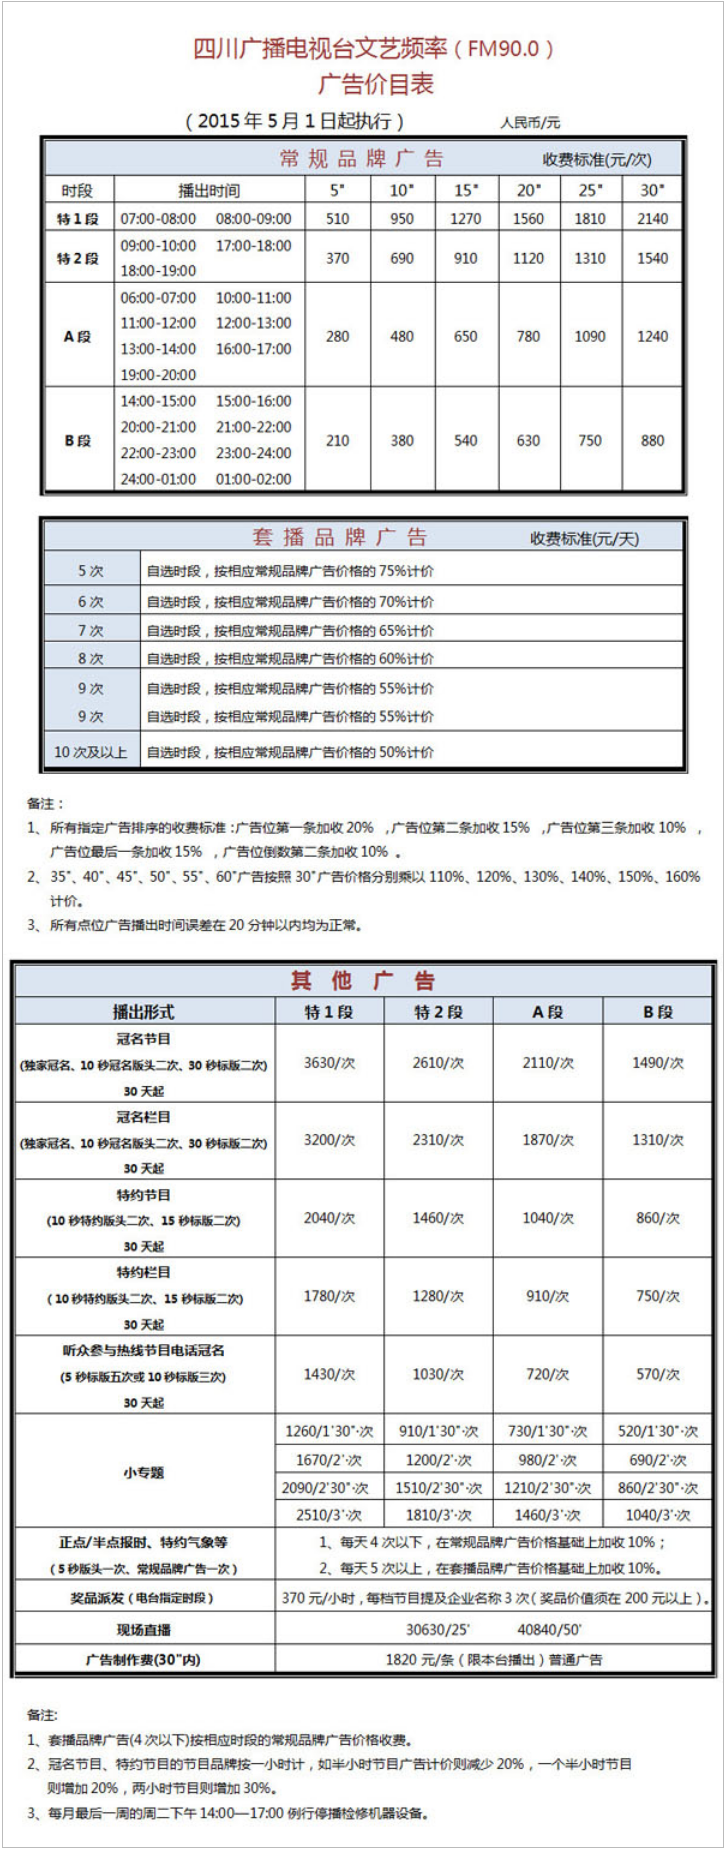 2015四川人民广播电台文艺频率 FM90.0广告报价表.png